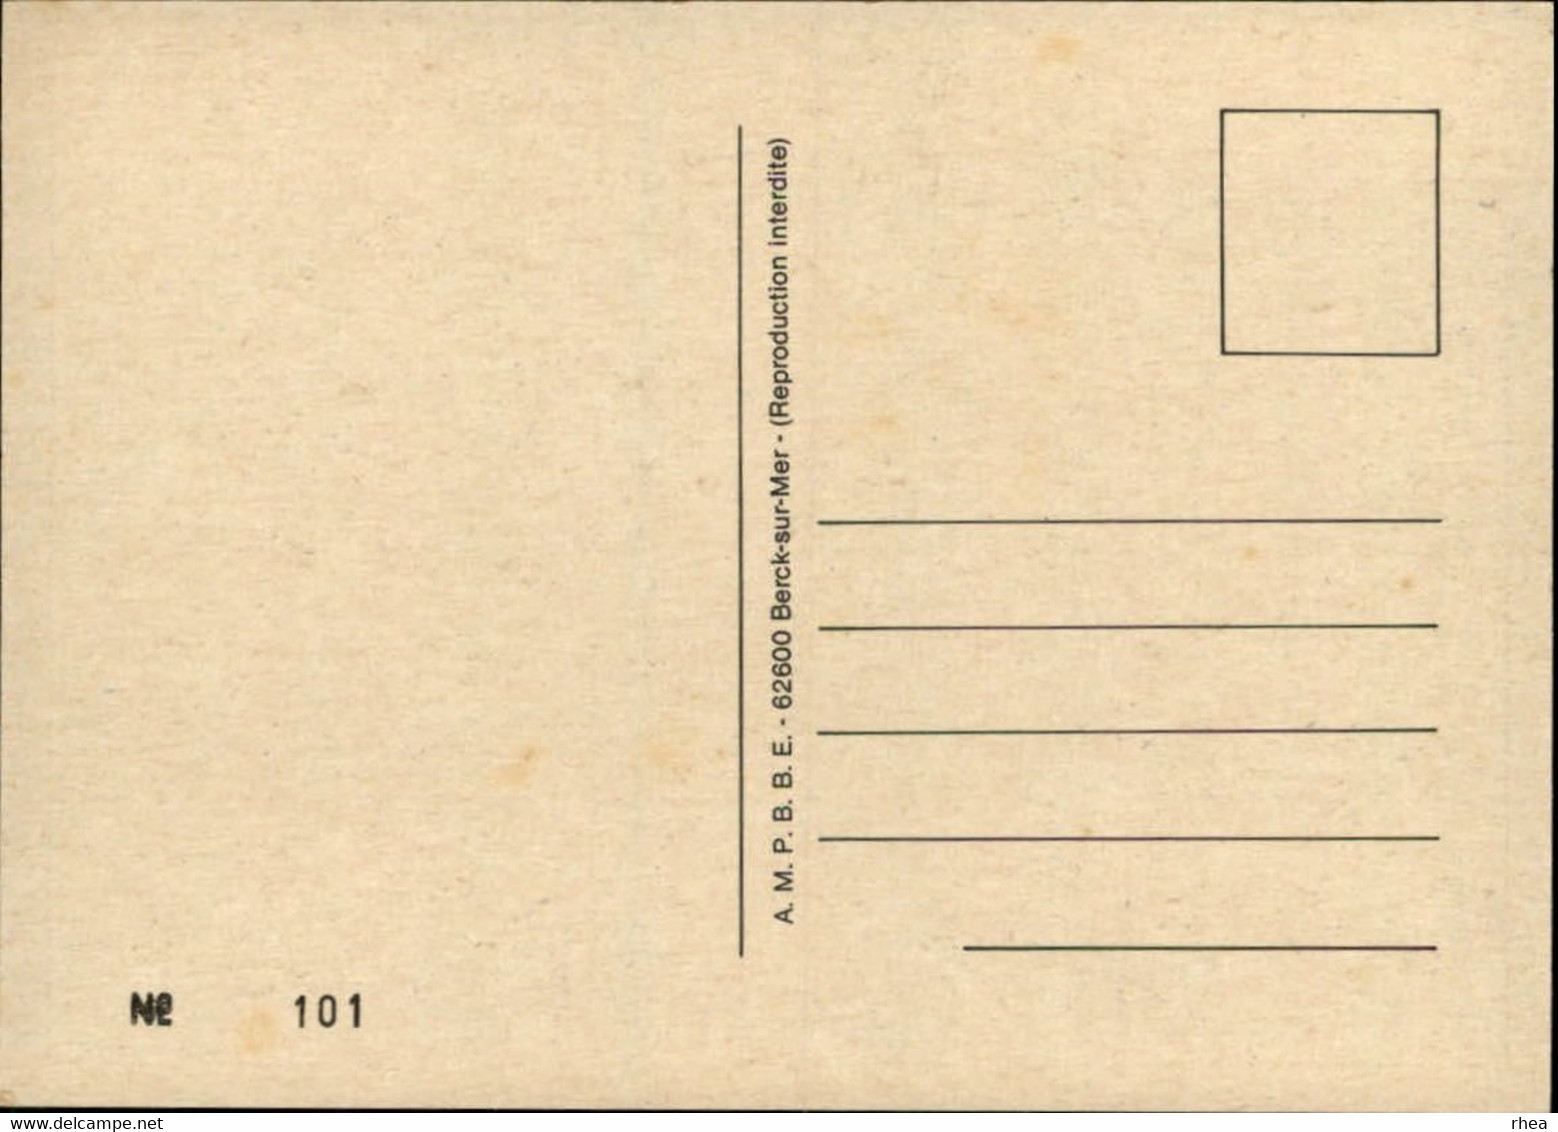 SALONS DE COLLECTIONS - Collectionneurs - Salon De Cartes Postales 1981 - 62 BERCK SUR MER - Dessin De Gonsseaume - Bourses & Salons De Collections